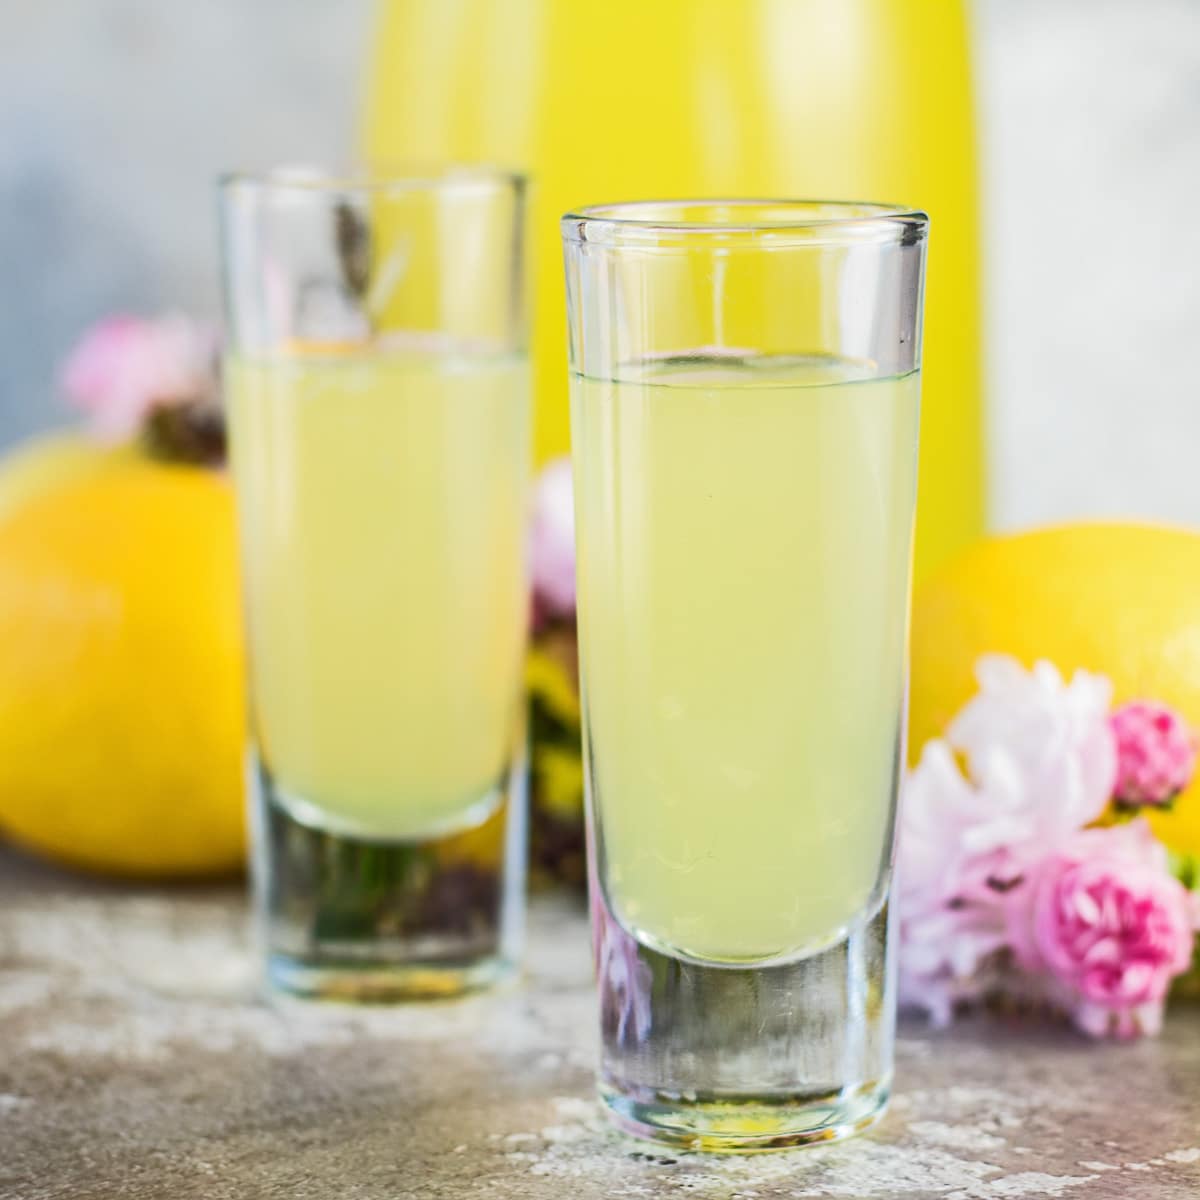 Домашно лимончело, поднесено в малки чаши с плодове и розови цветя във фонов режим.